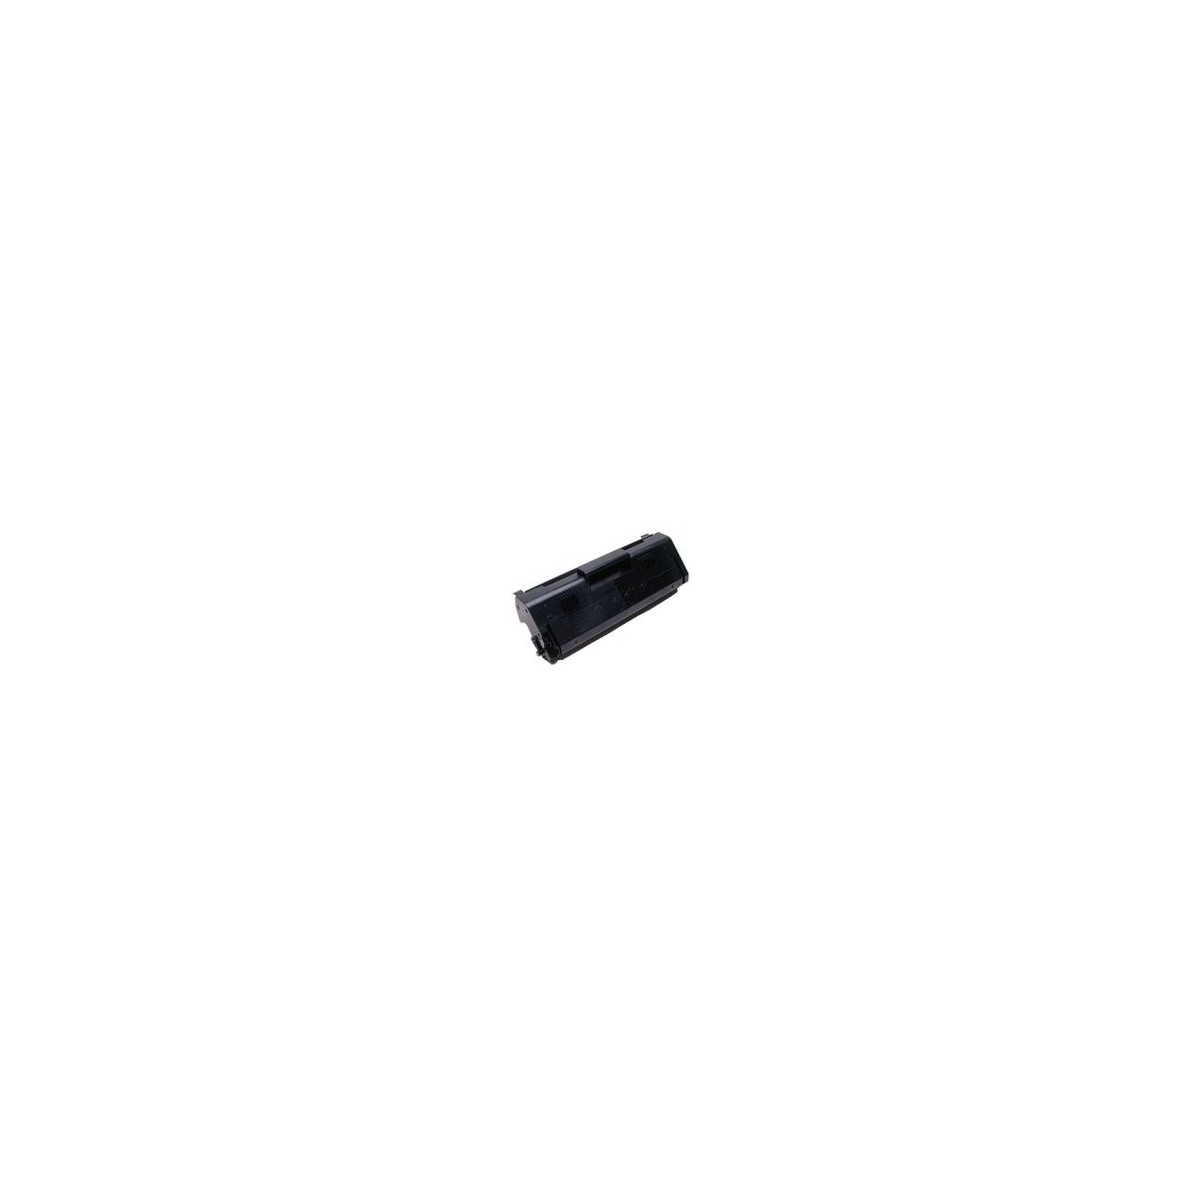 Konica Minolta 2560 Imaging unit - 15000 pages - Black